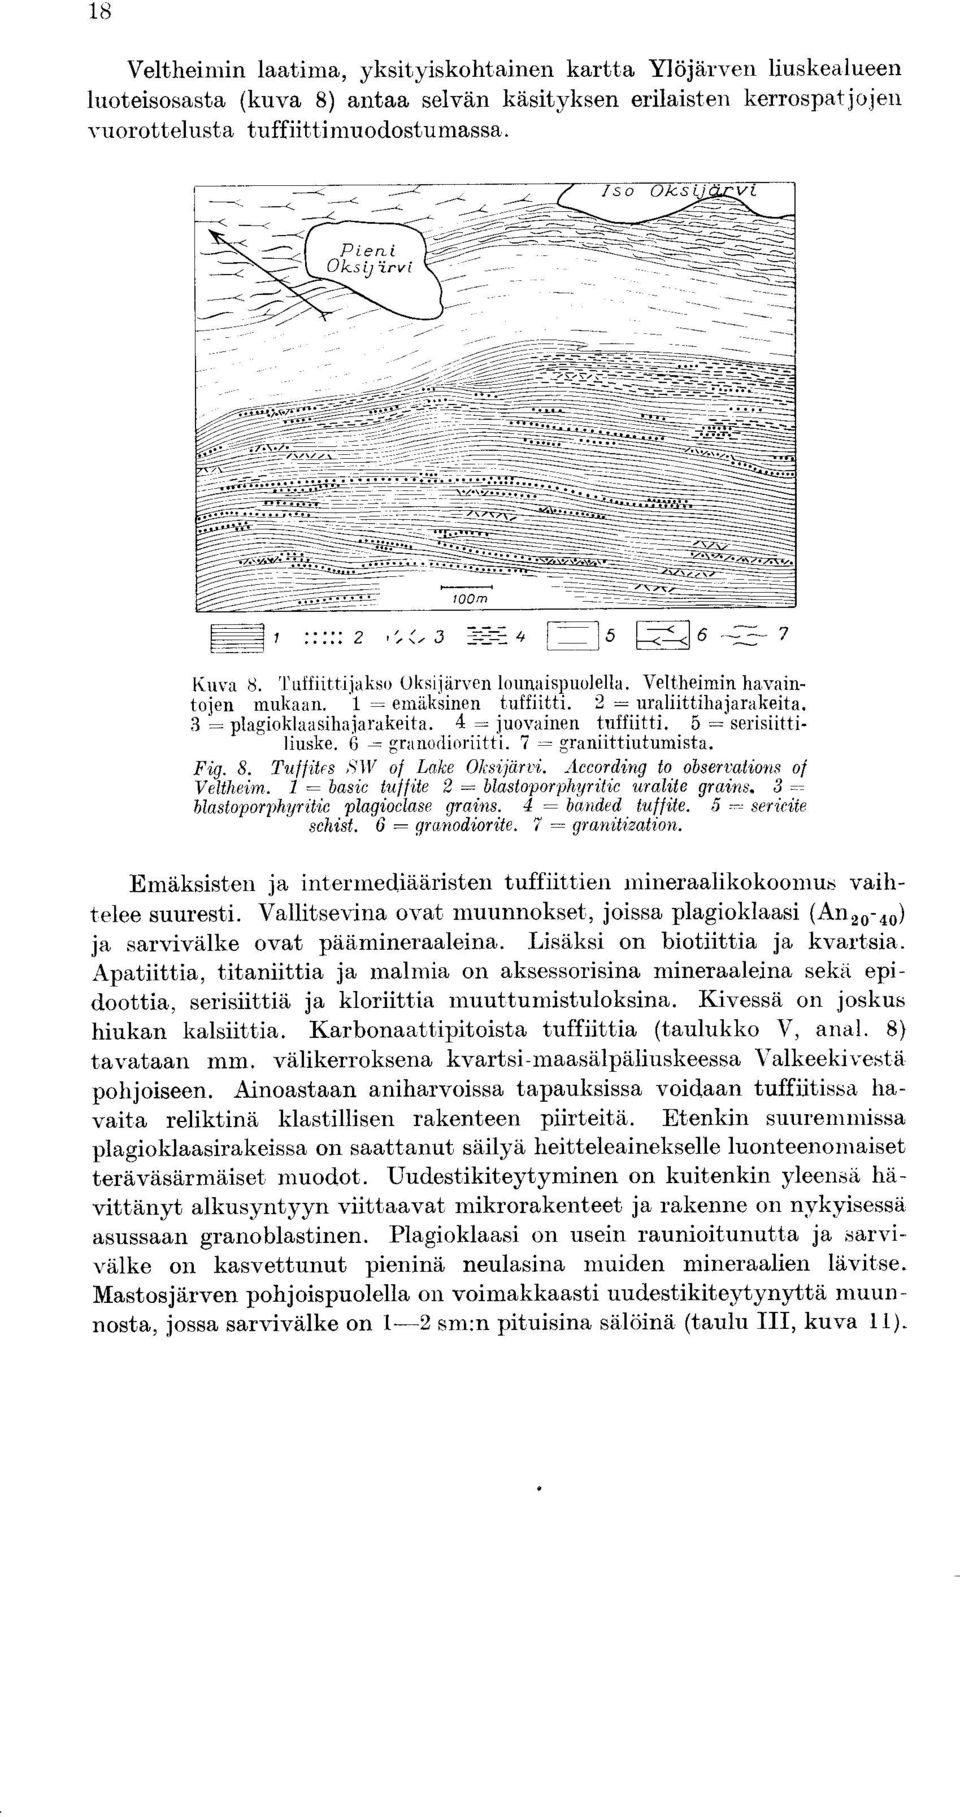 6 = granodioriitti. 7 = graniittiutumista. Fig. S. uffites b`1v of Lake Oksijdrvi. According to observations of Veltheim. I = basic tuf fife 2 = blastoporphyritic uralite grains.